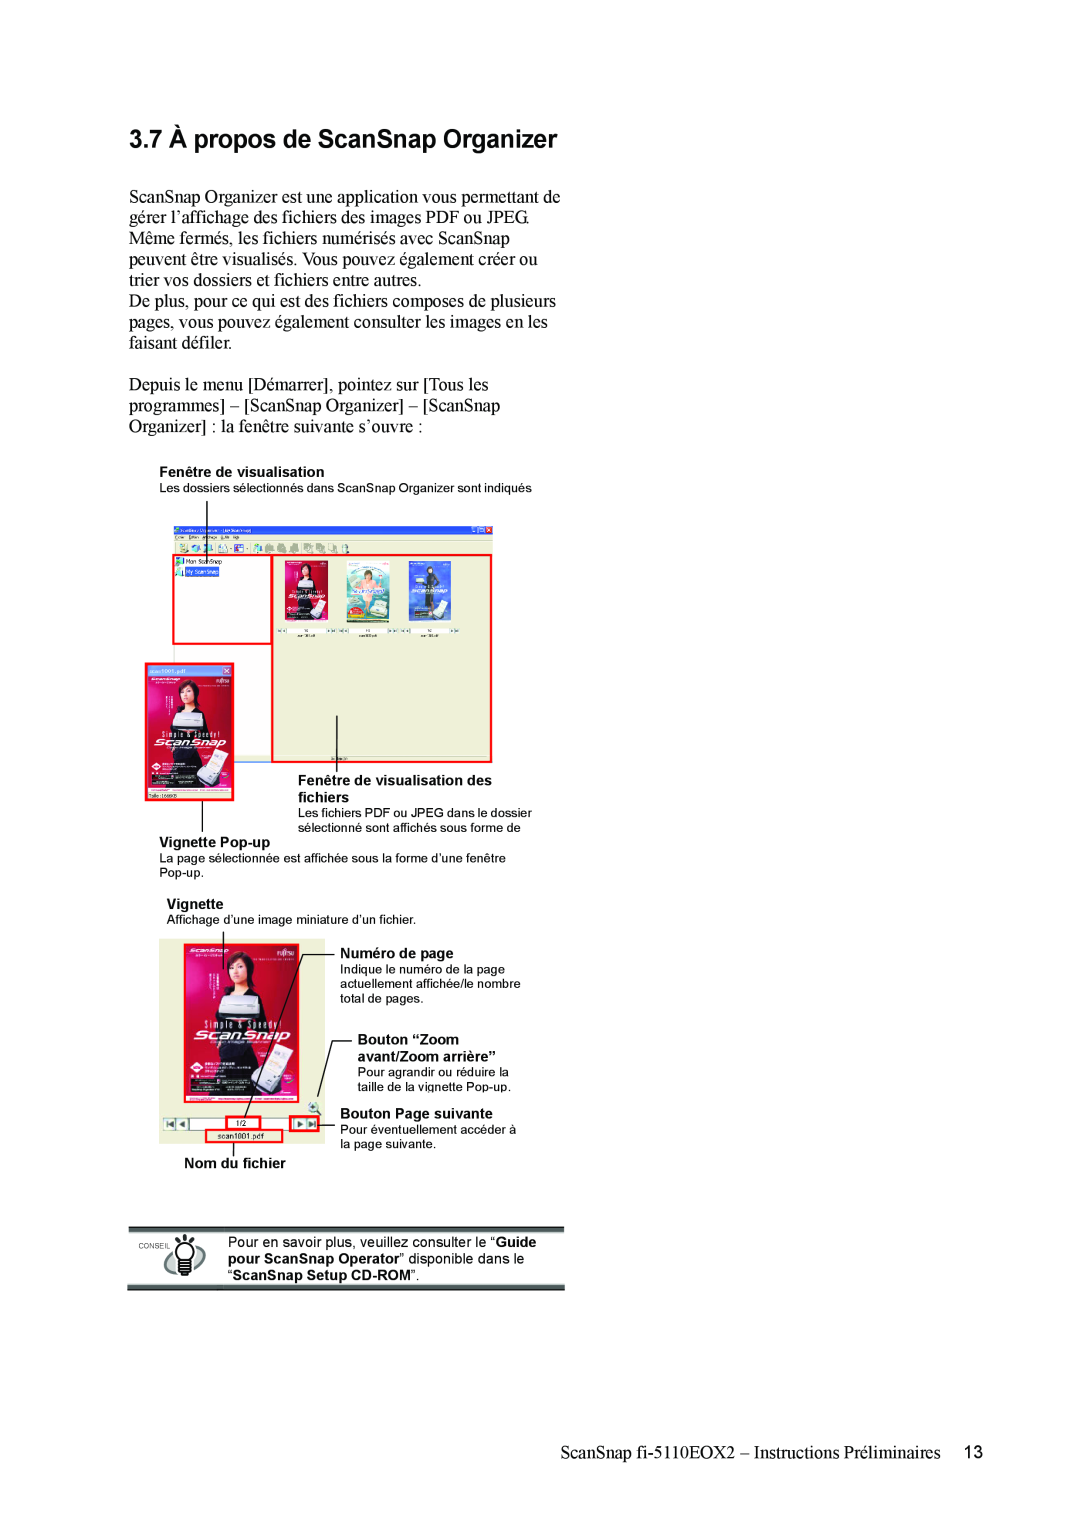 Fujitsu fi-5110EOX2 manual 3.7 À propos de ScanSnap Organizer, Fenêtre de visualisation des fichiers, Vignette Pop-up 